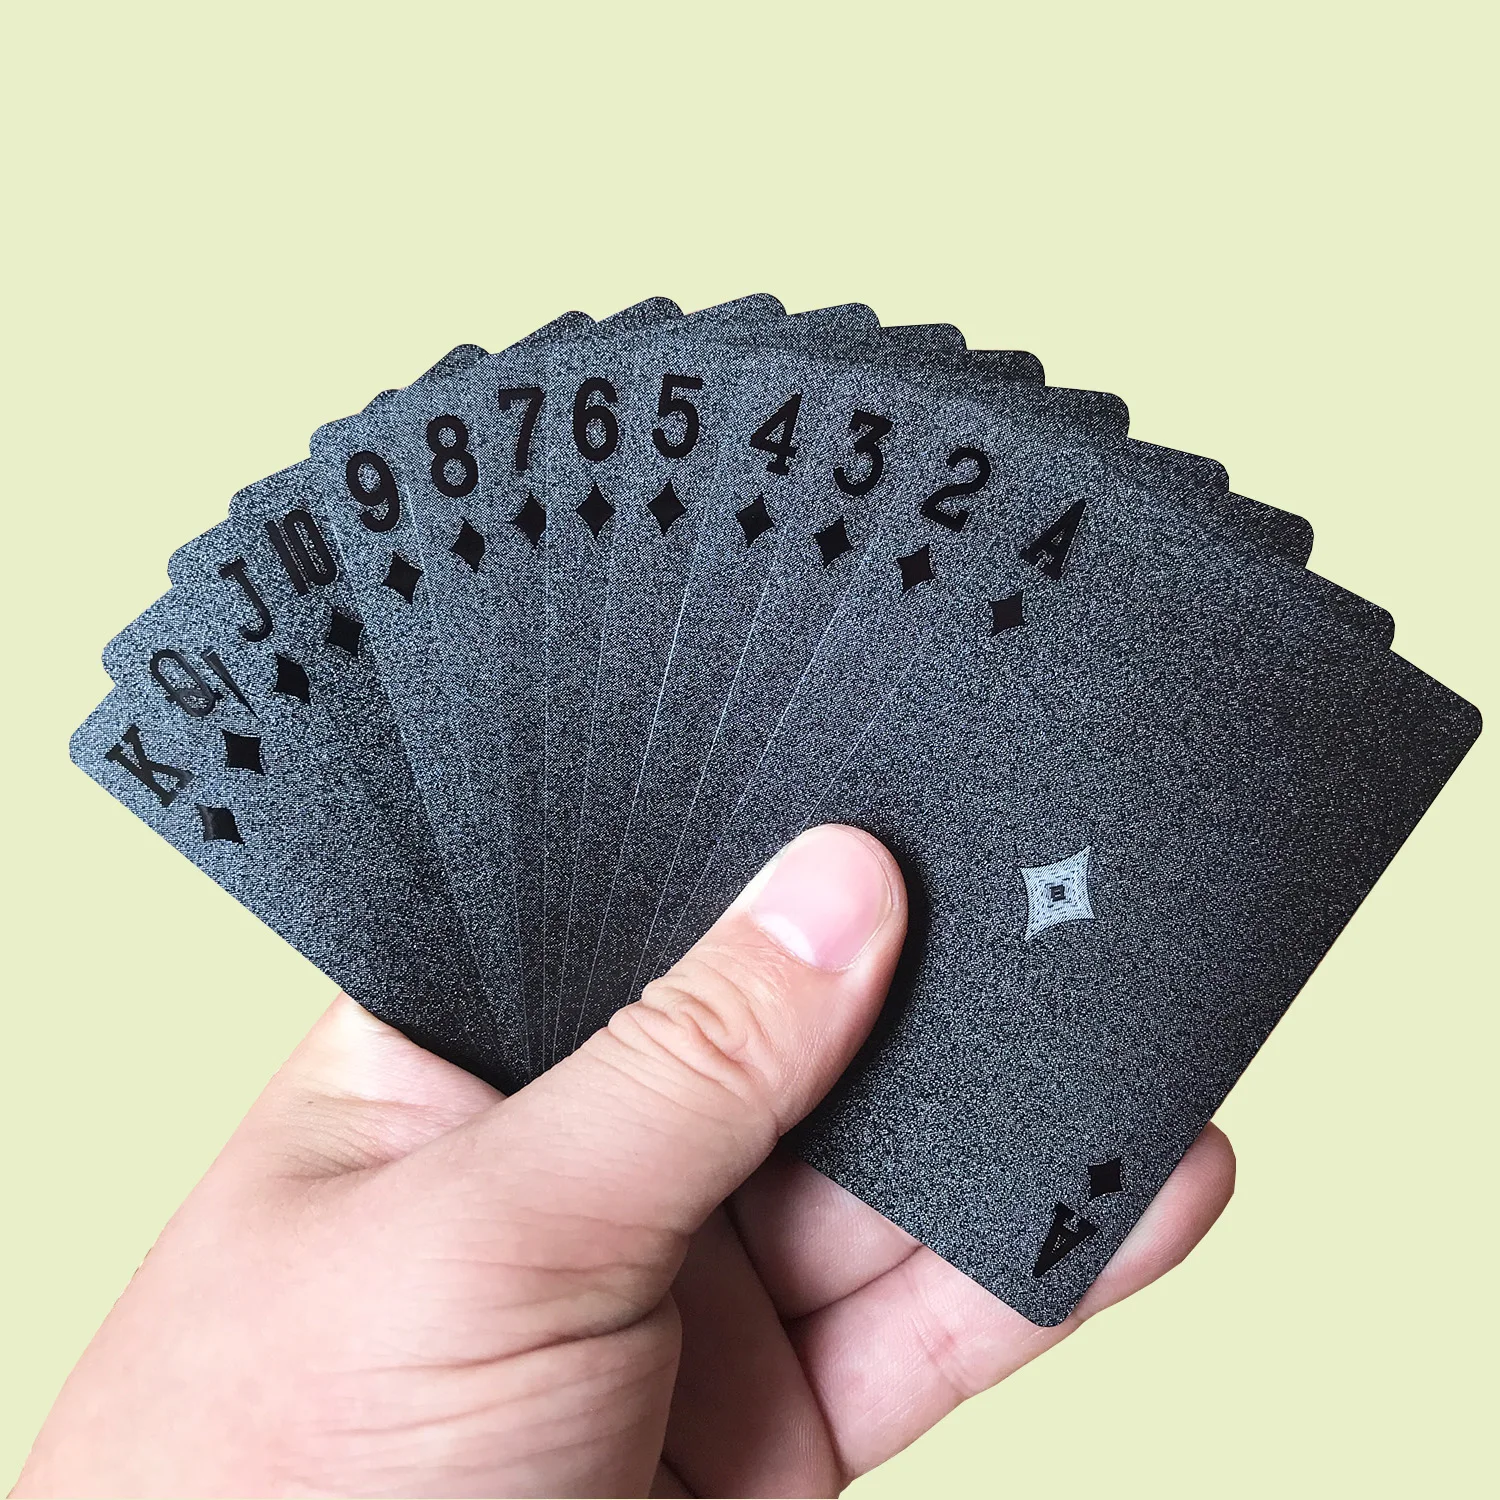 Playing Cards nero carte da poker Carte da poker in plastica carte da gioco carte da gioco classiche in PVC impermeabile ROSE